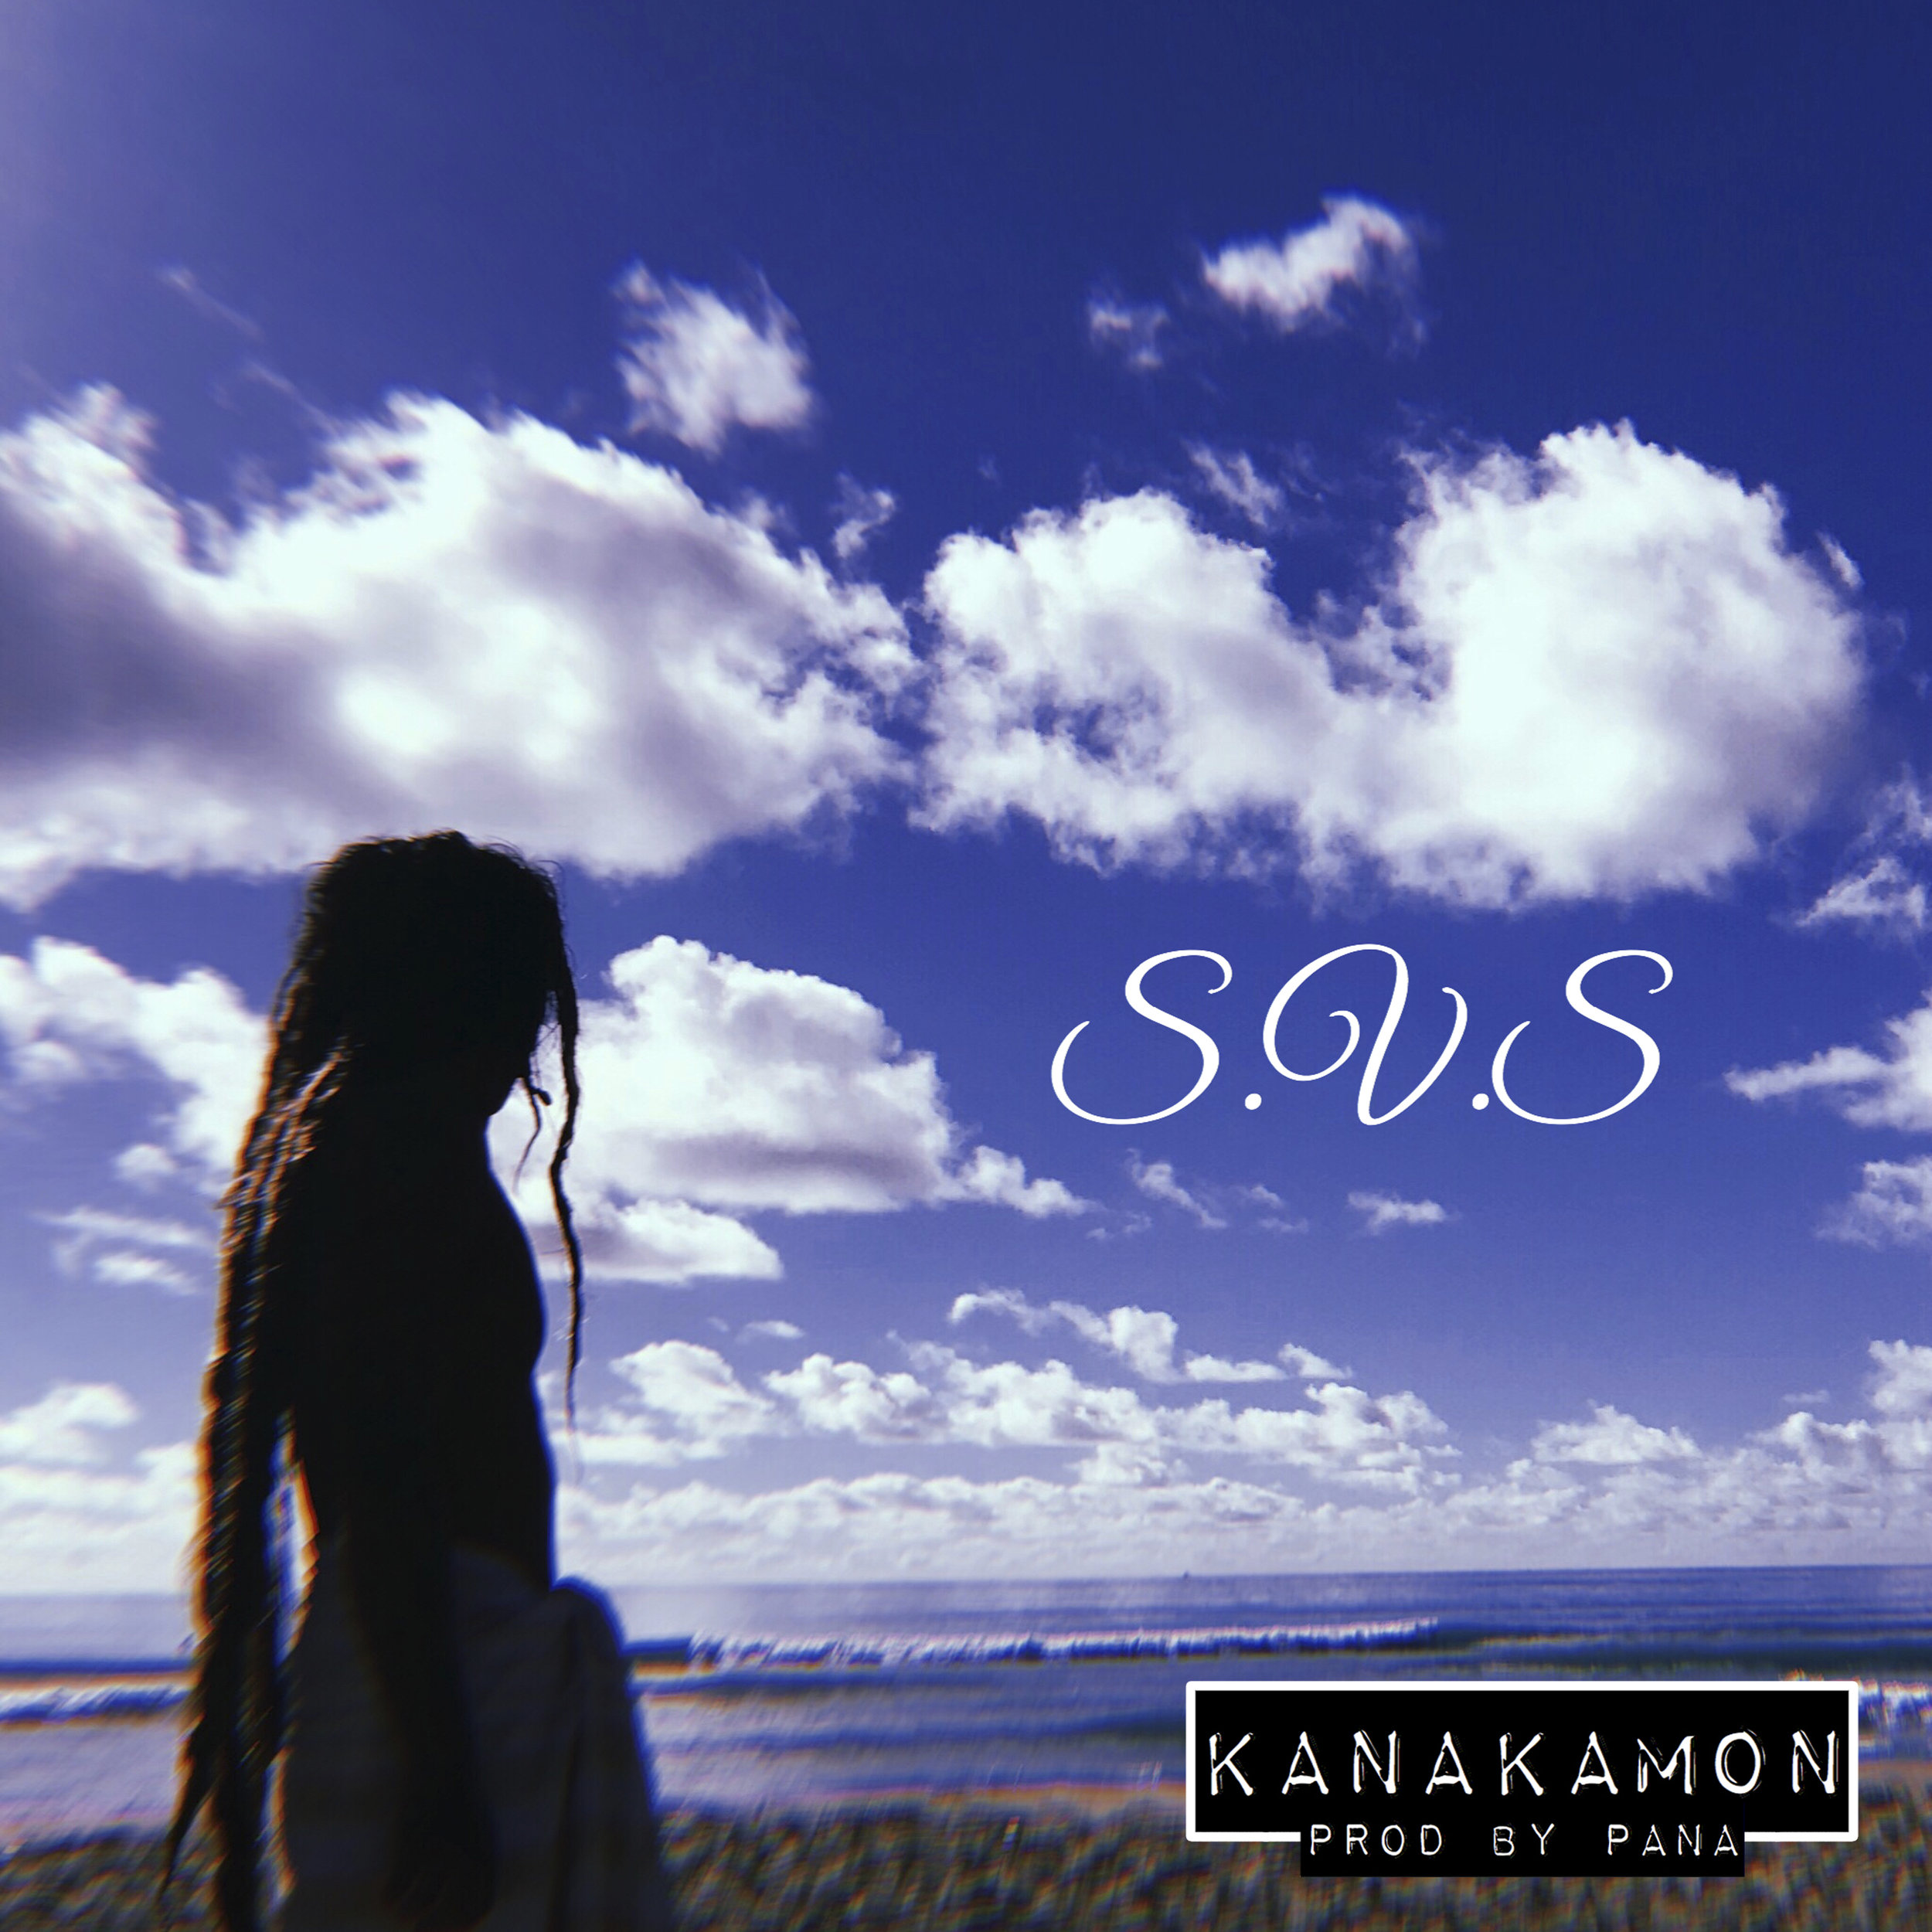 KANAKAMON - "S.V.S"